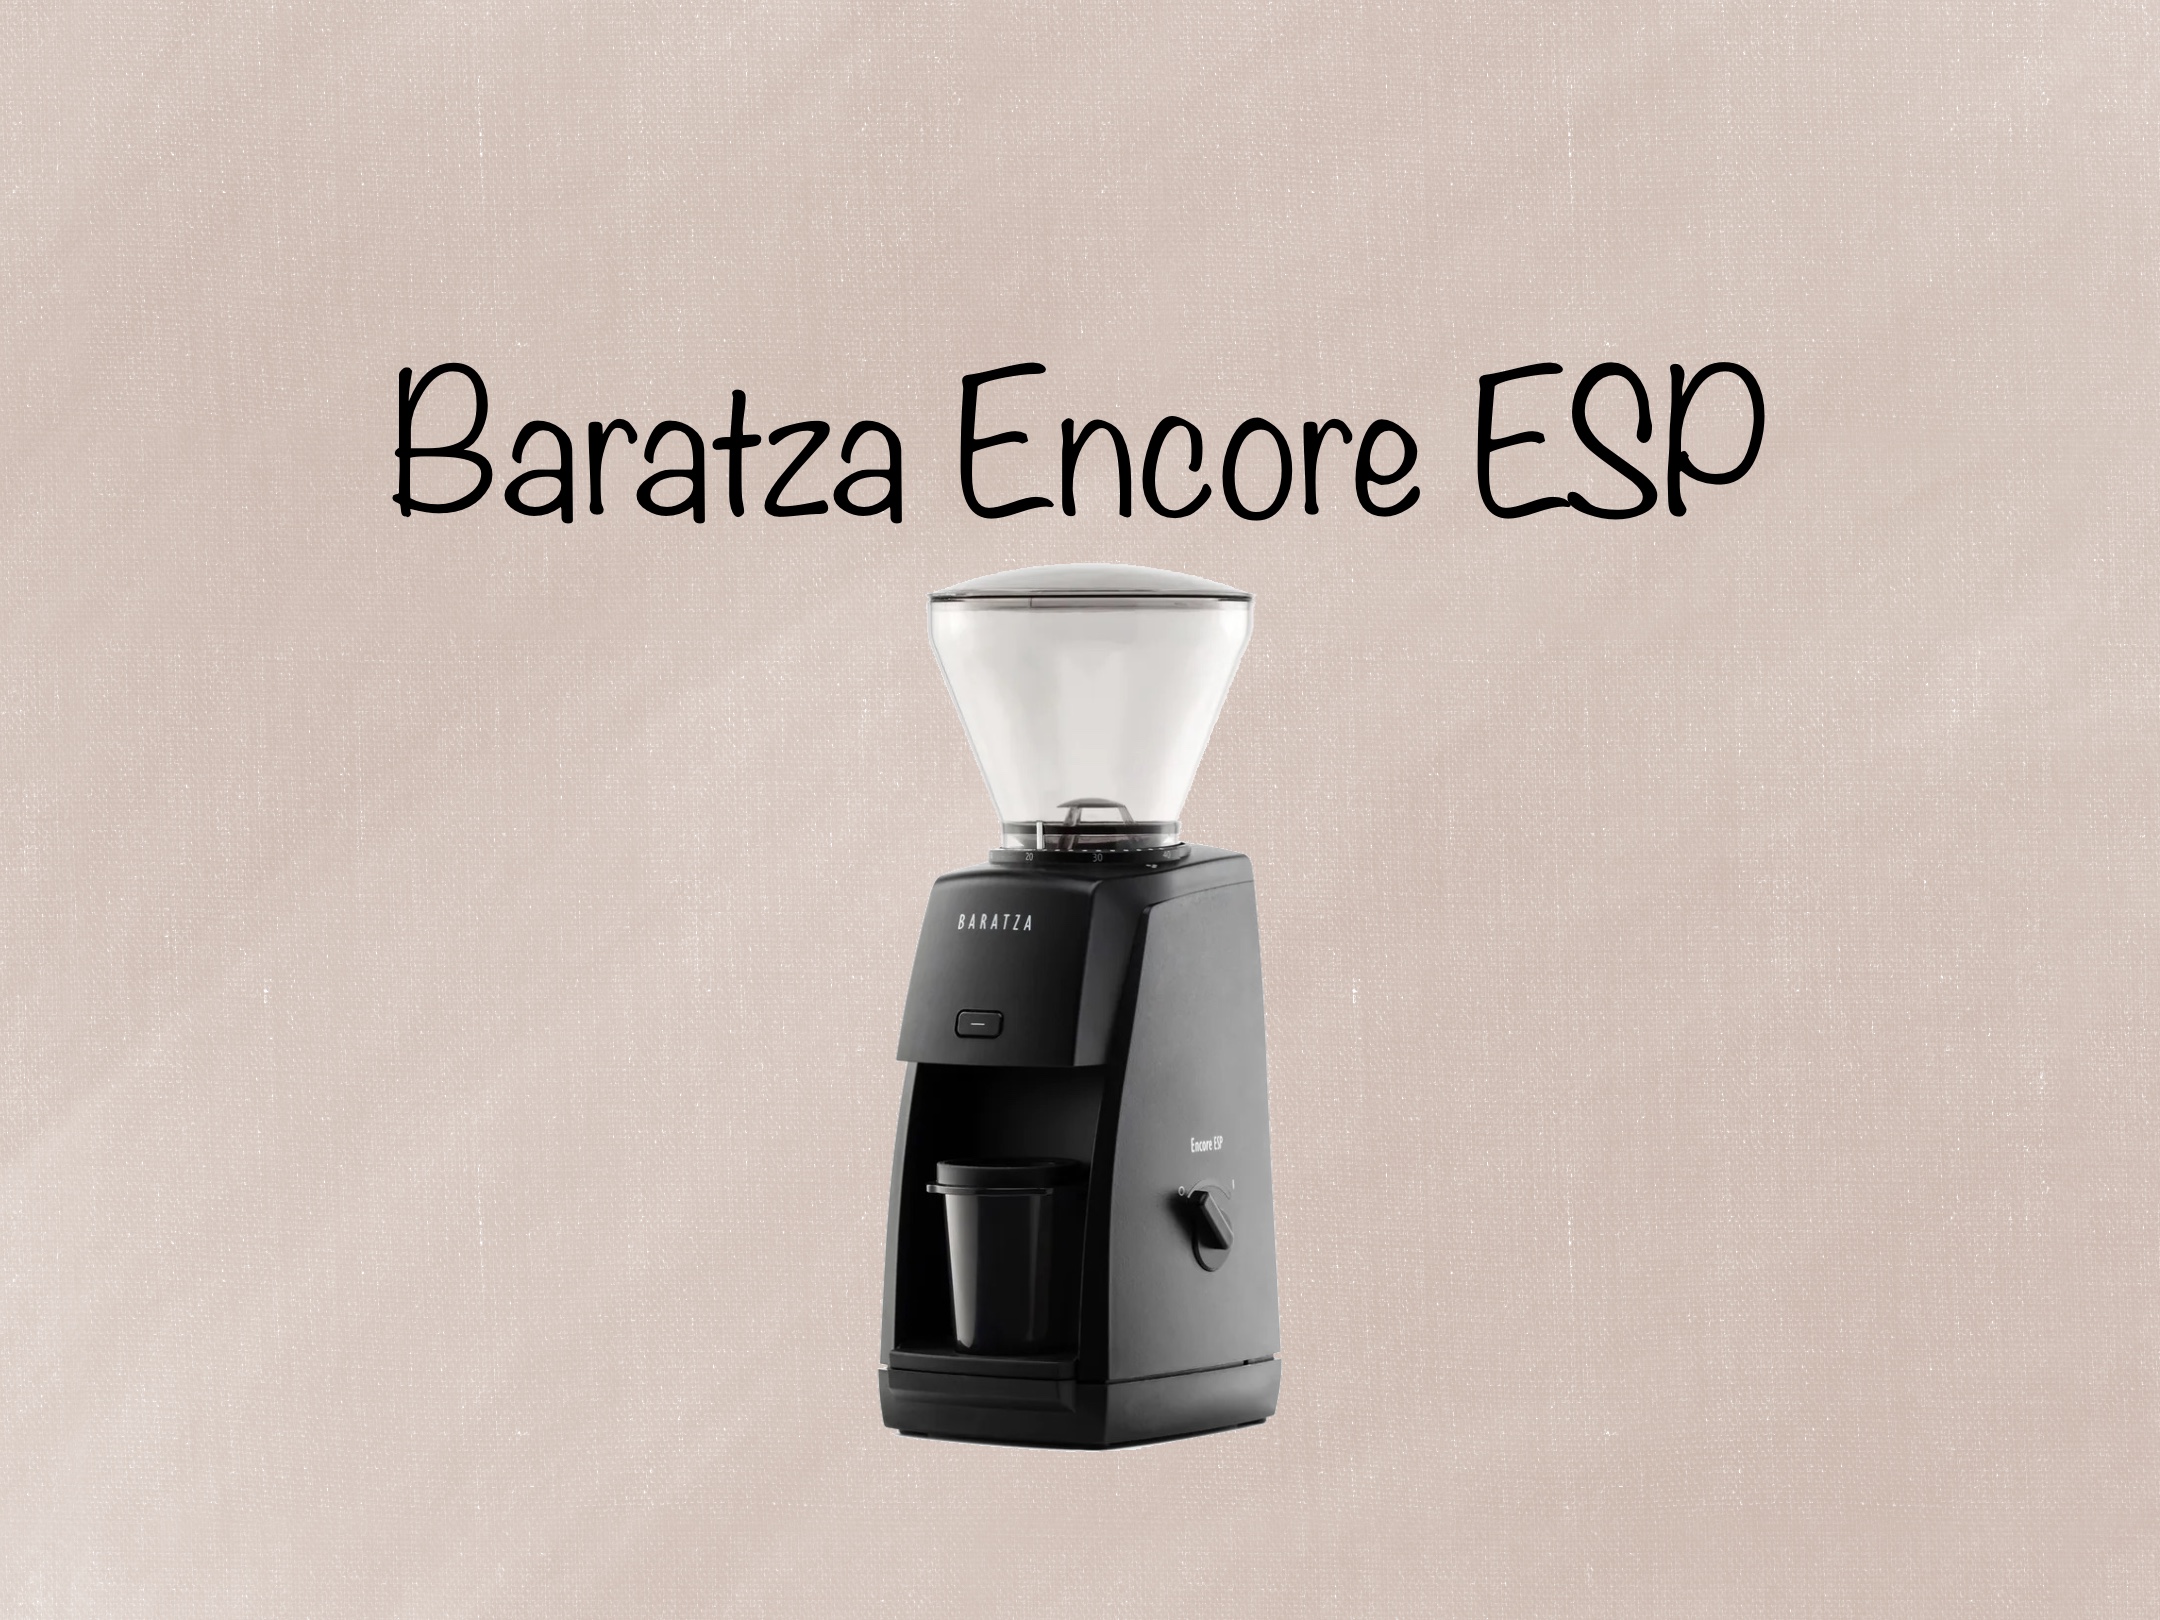 Baratza Encore ESP Grinder